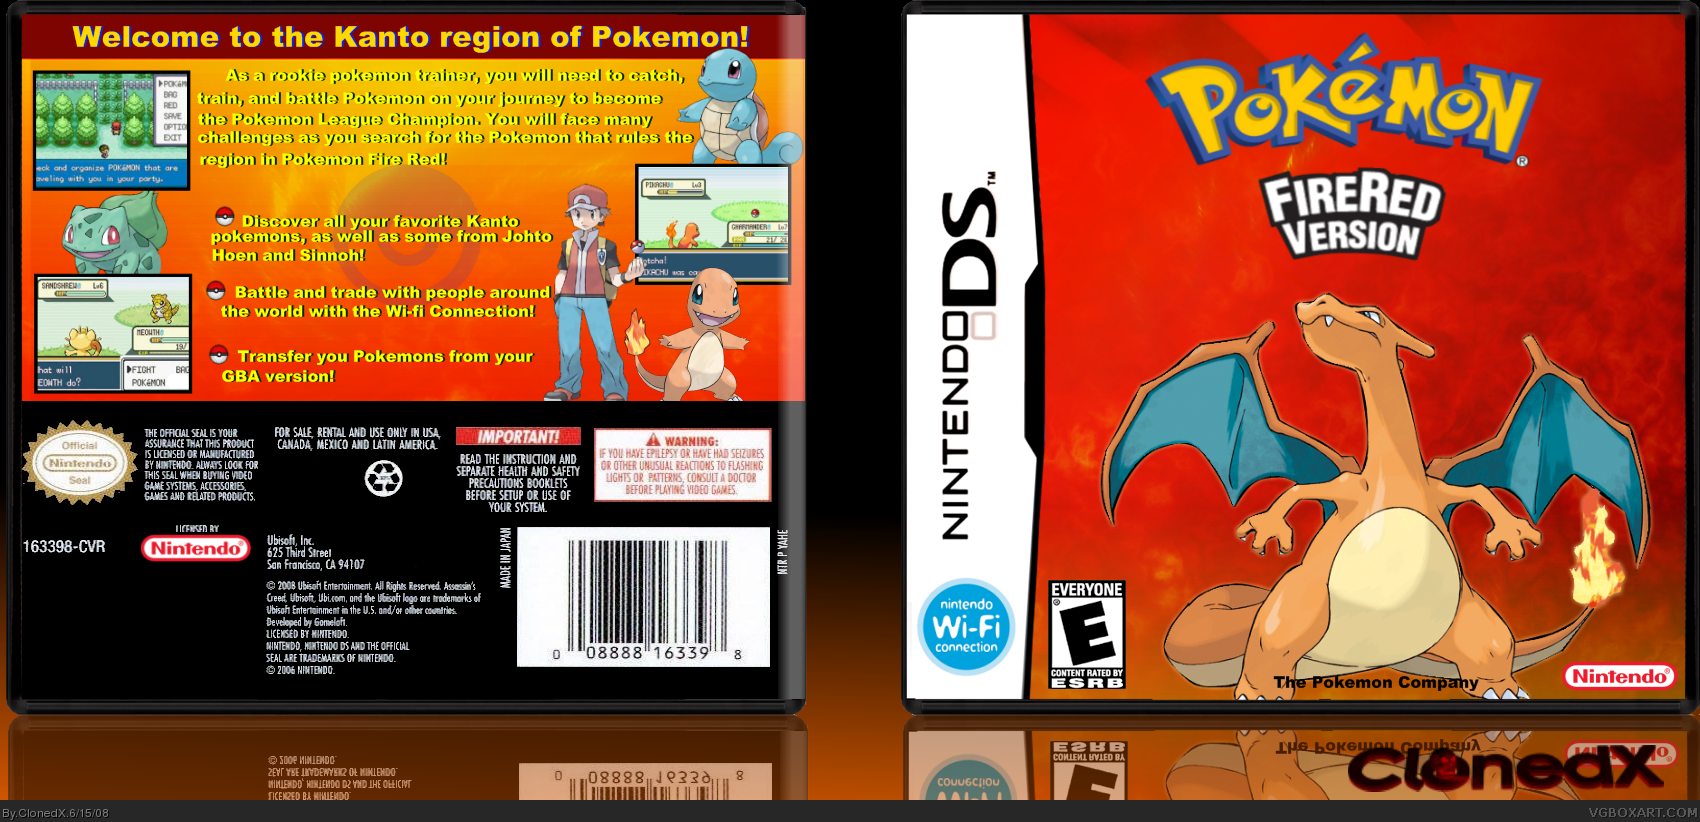 Pokemon Fire Red Version box cover